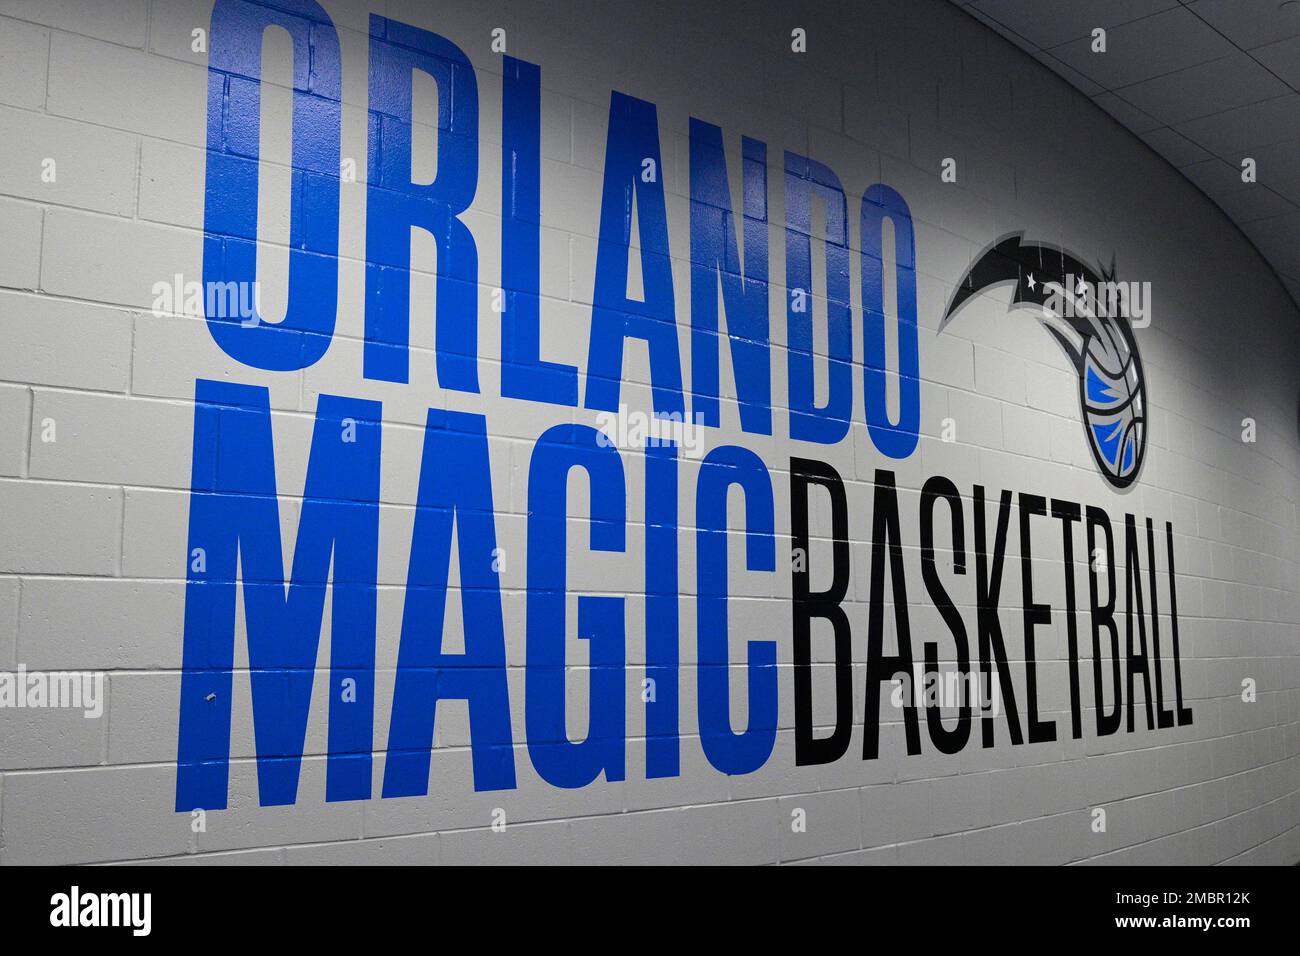 Orlando Magic NBA Basketball Tickets at Home, Amway Center 2023